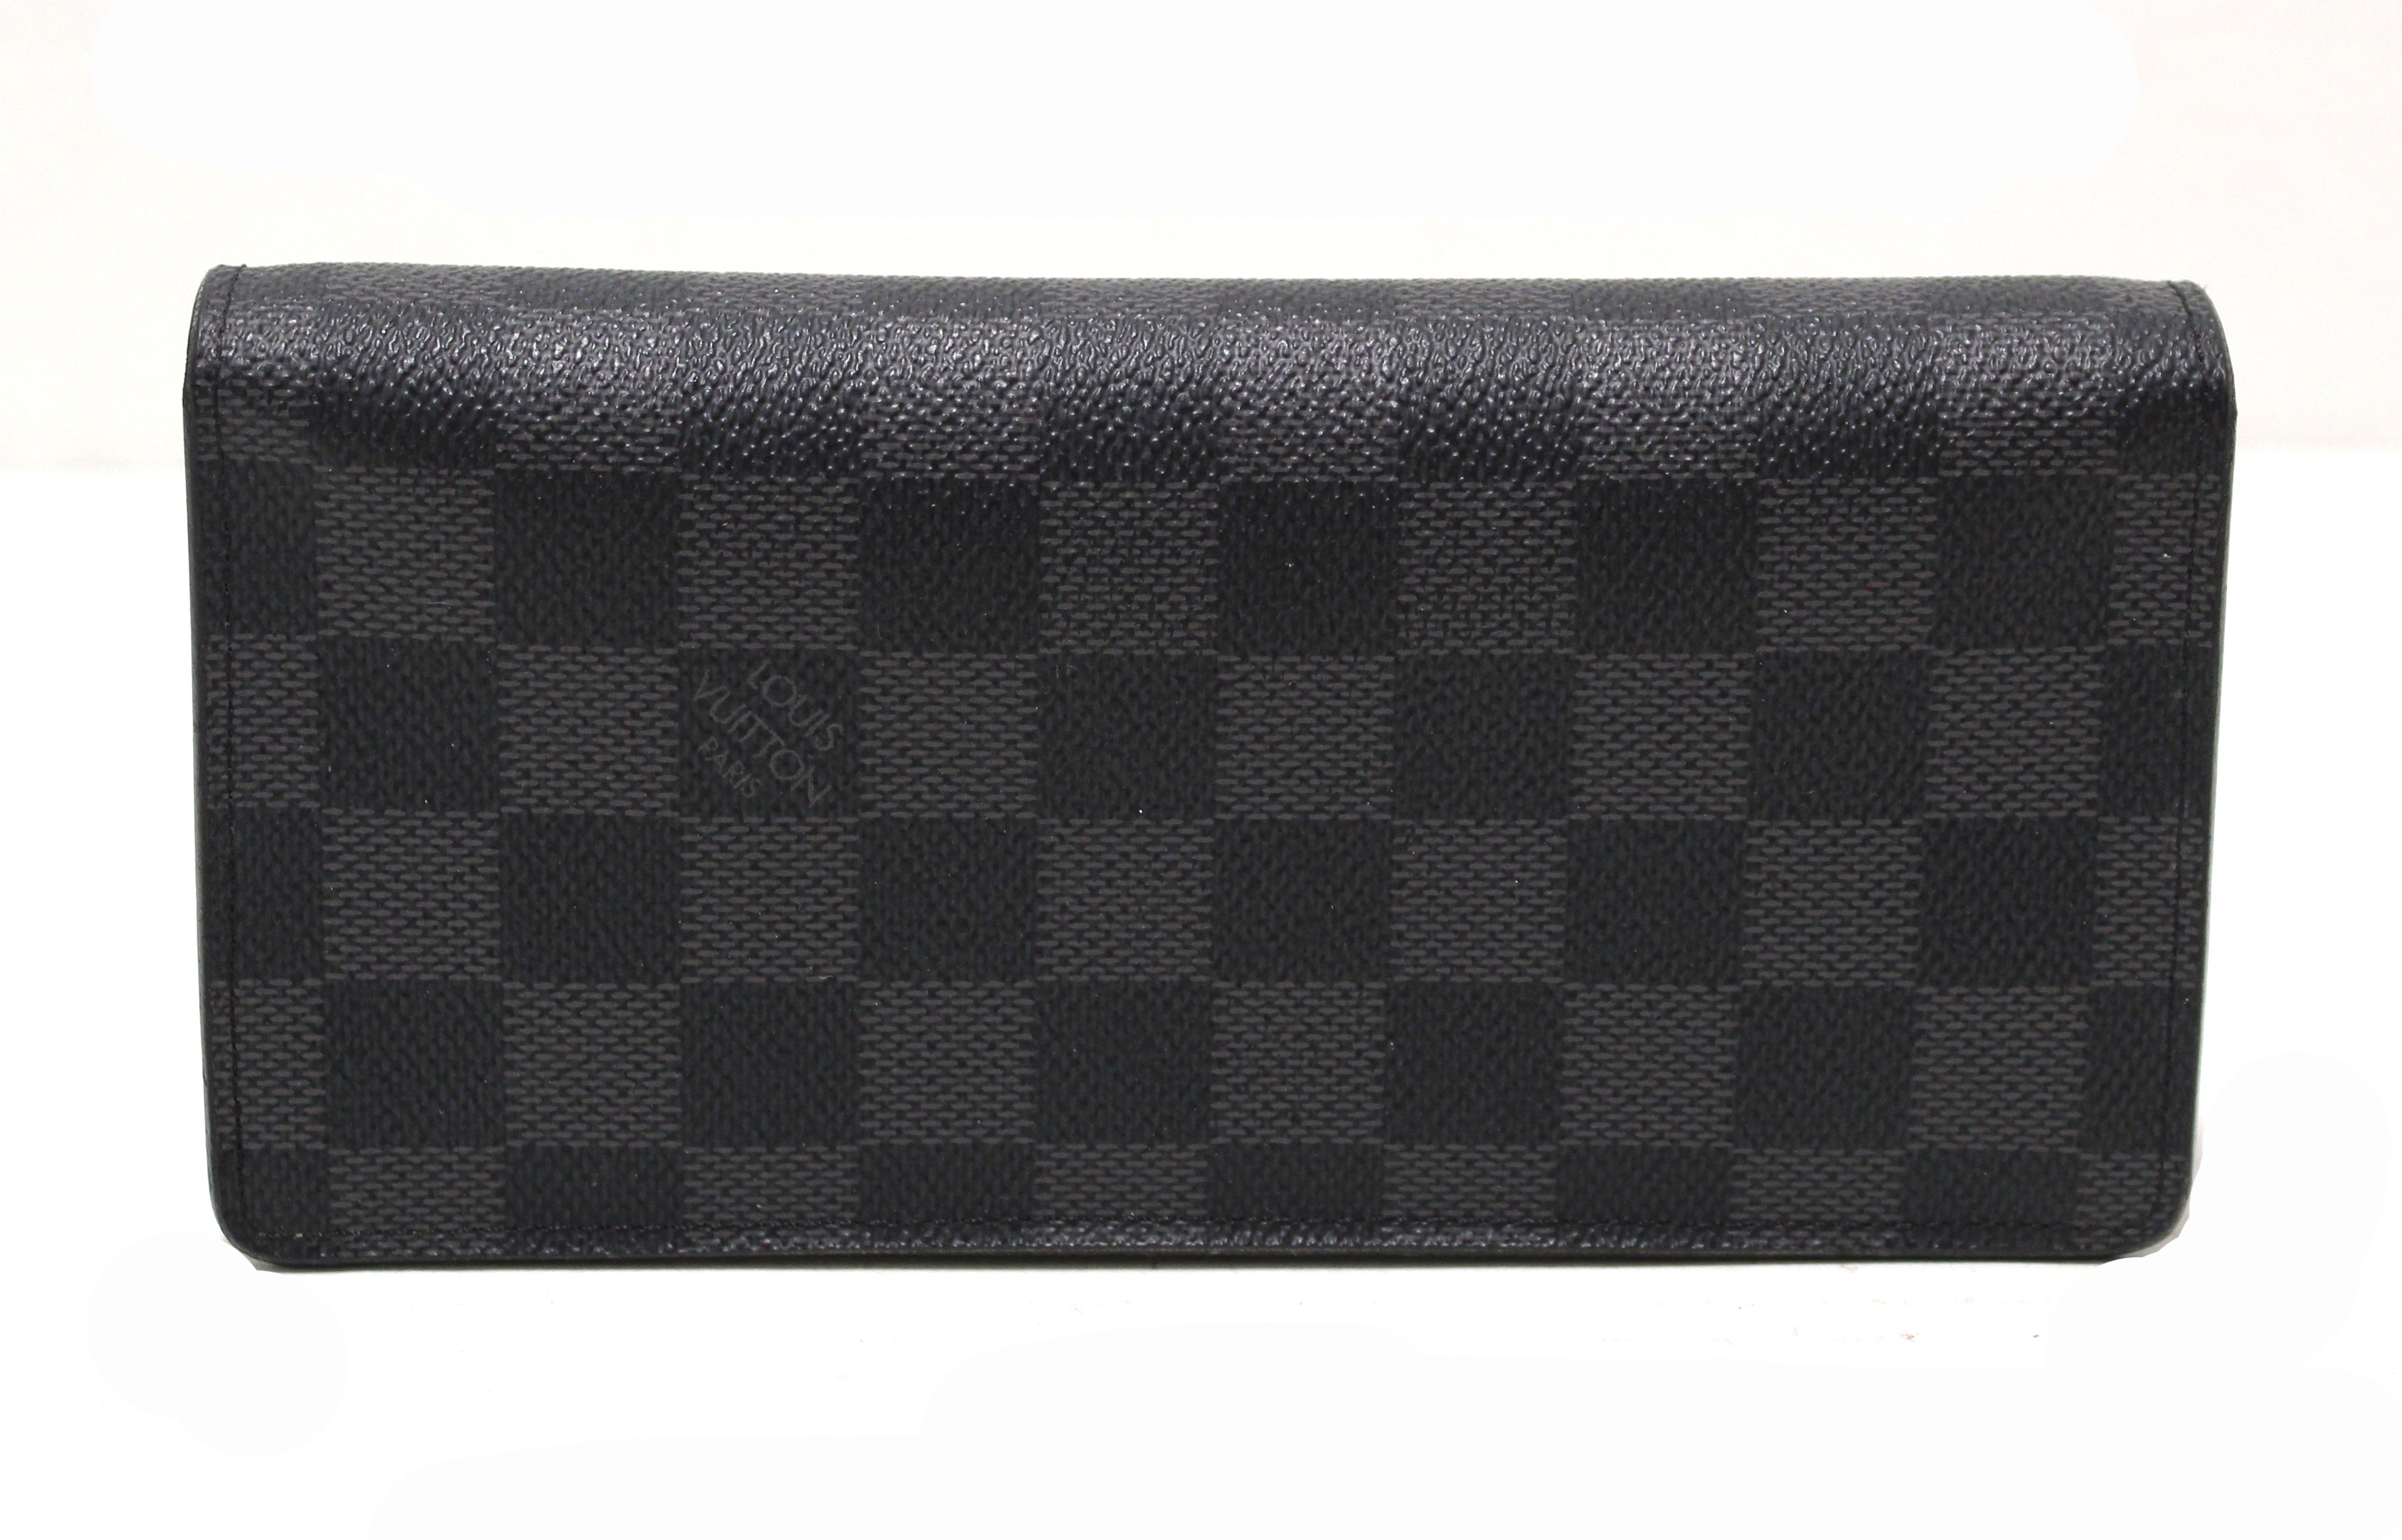 Authentic Louis Vuitton Brazza wallet